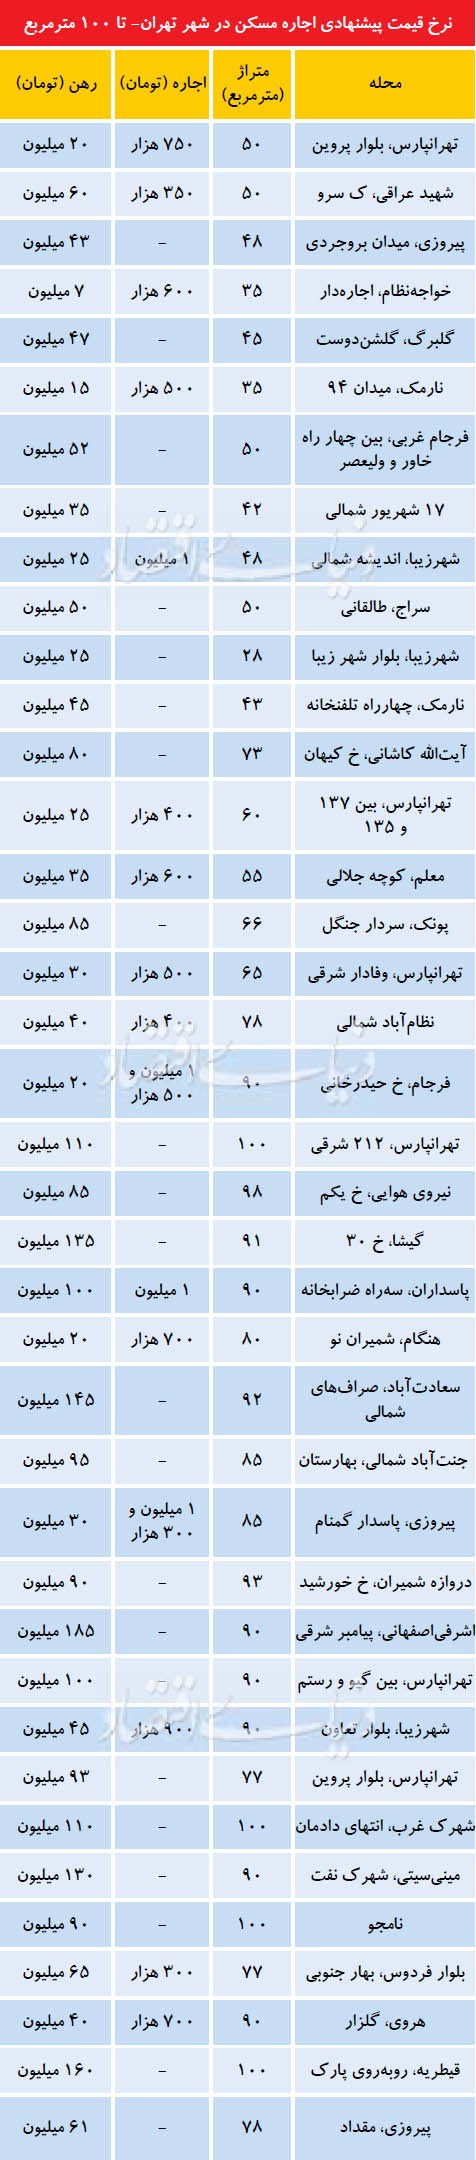 نرخ پیشنهادی اجاره مسکن در شهر تهران تا 100 متر مربع